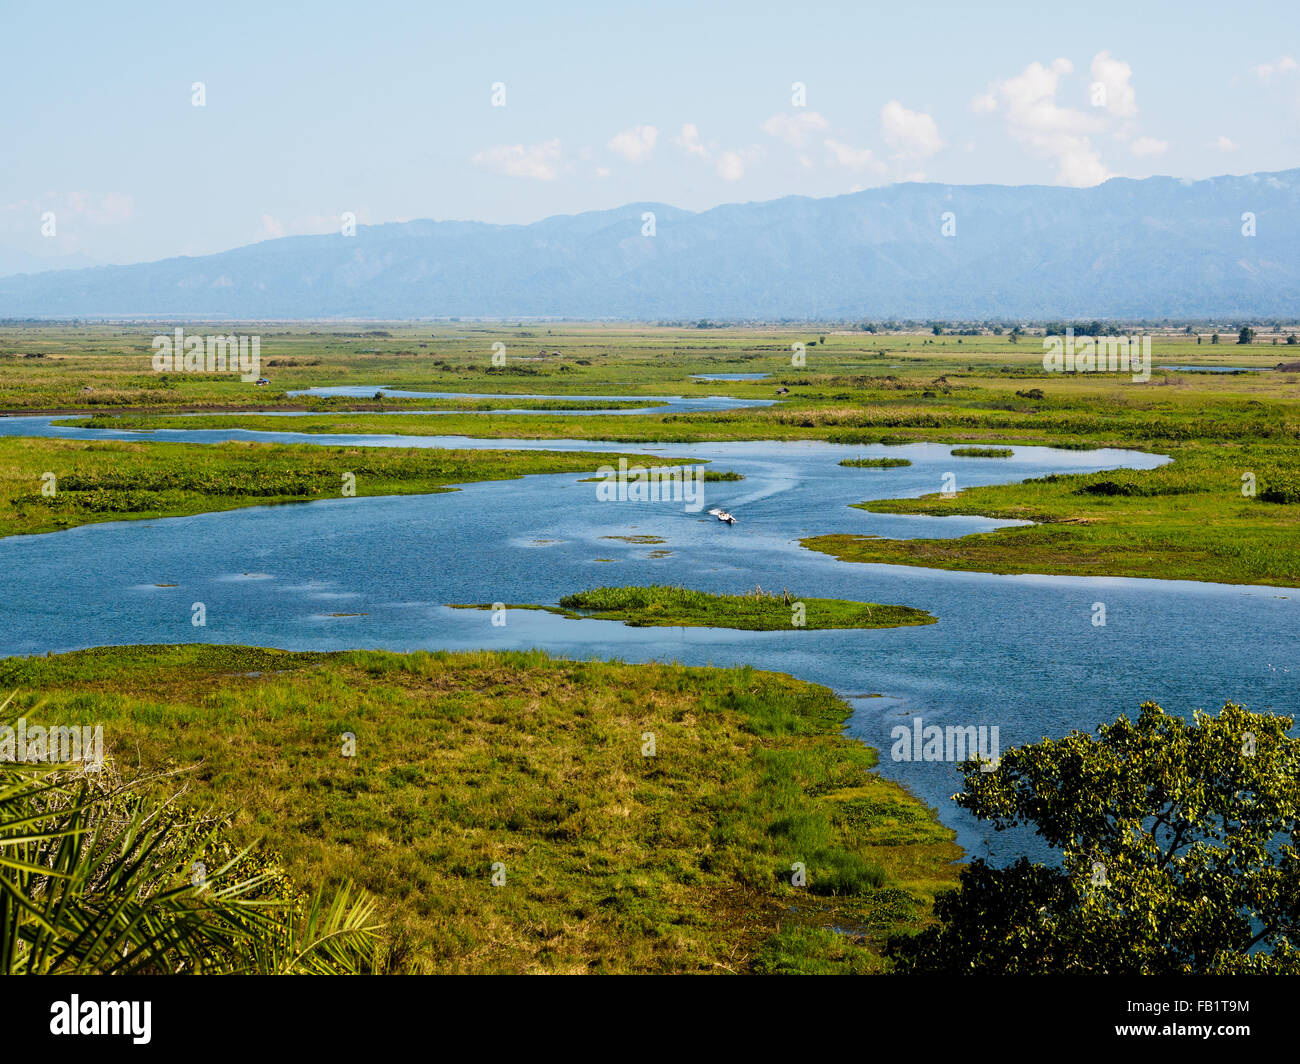 The wetland of Indawgyi Lake, Kachin State, Myanmar Stock Photo